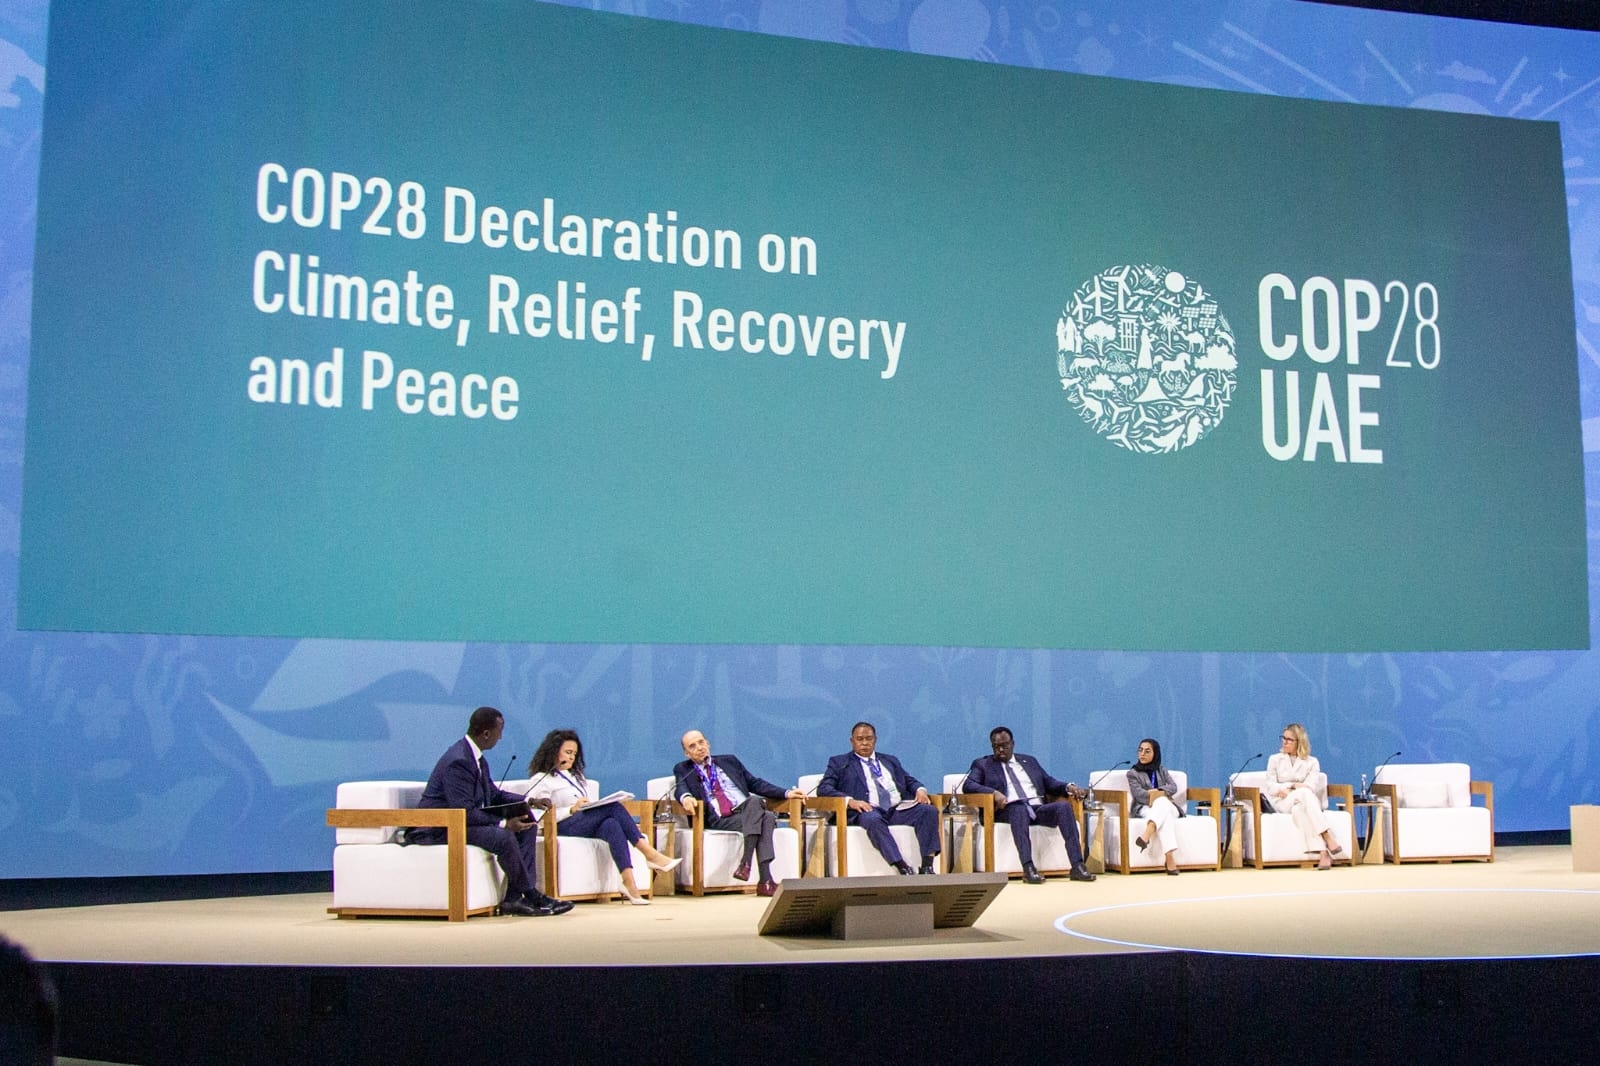 Avanzar hacia la paz global para detener la destrucción de la vida y el planeta, el llamado del canciller Leyva durante la COP28